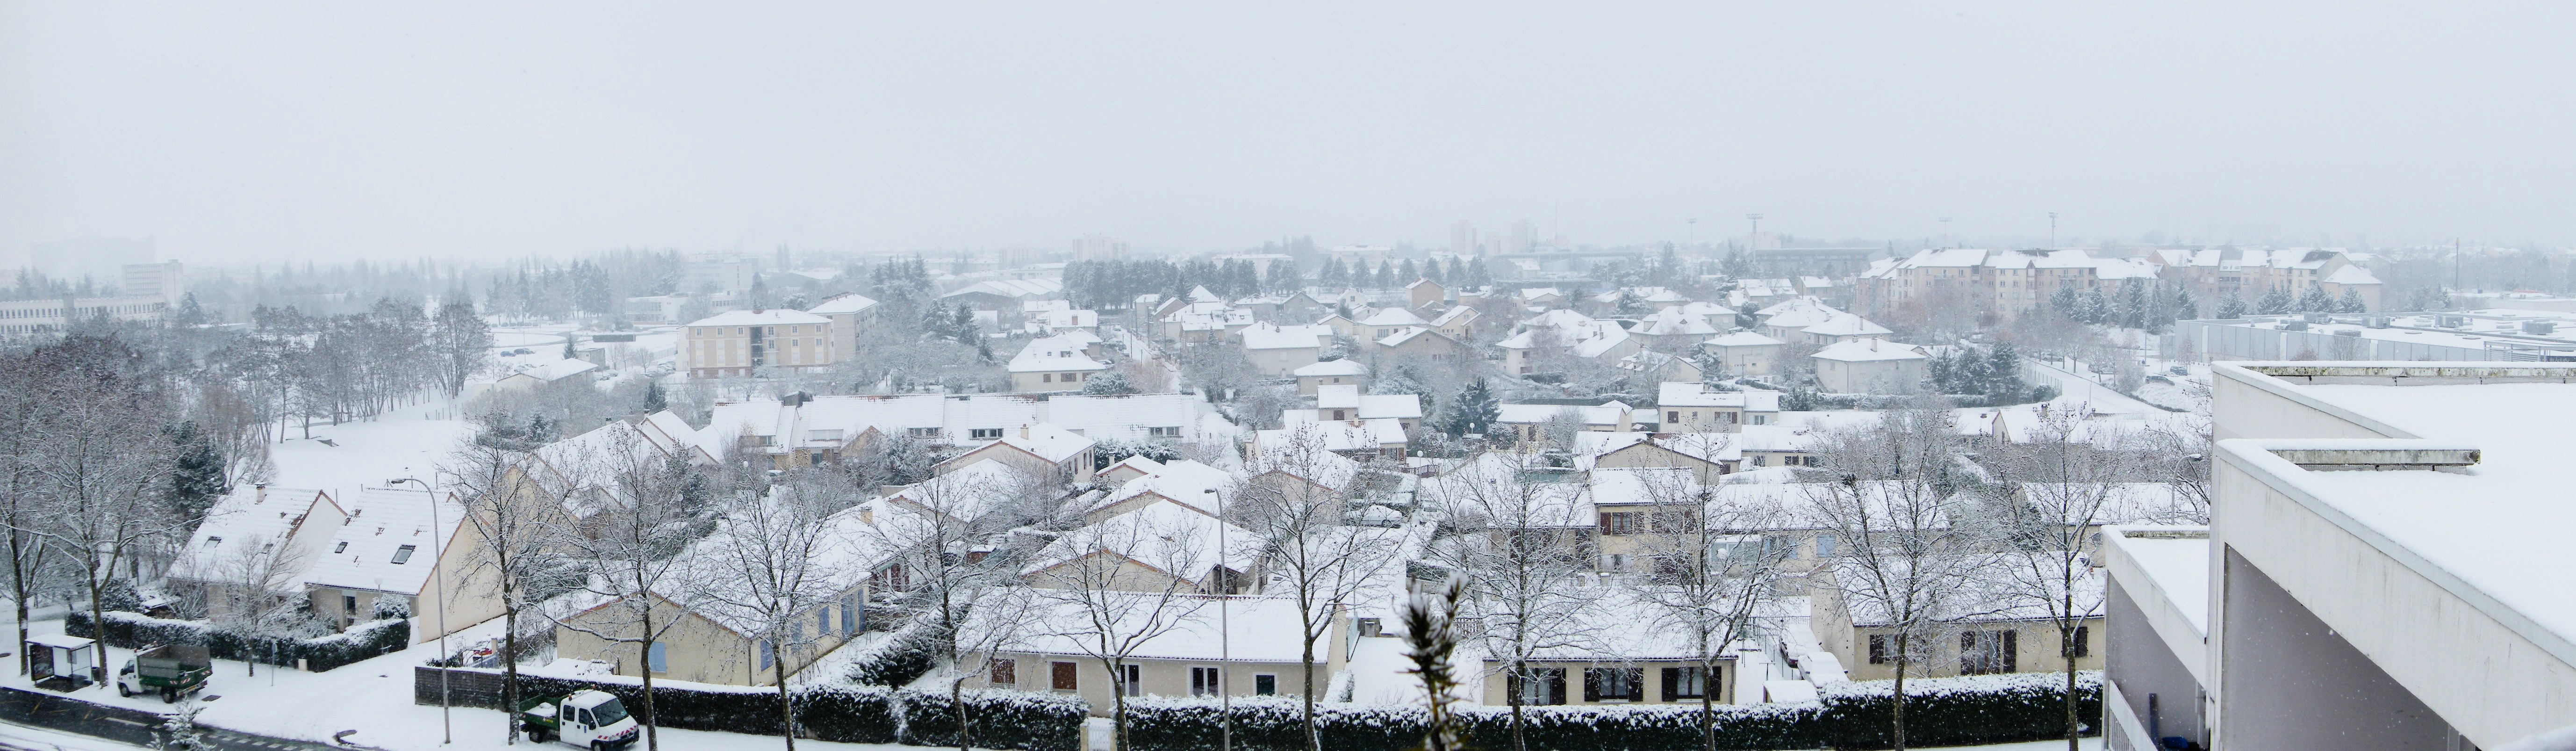 Beaulieu sous la neige (hiver 2009-2010) photo